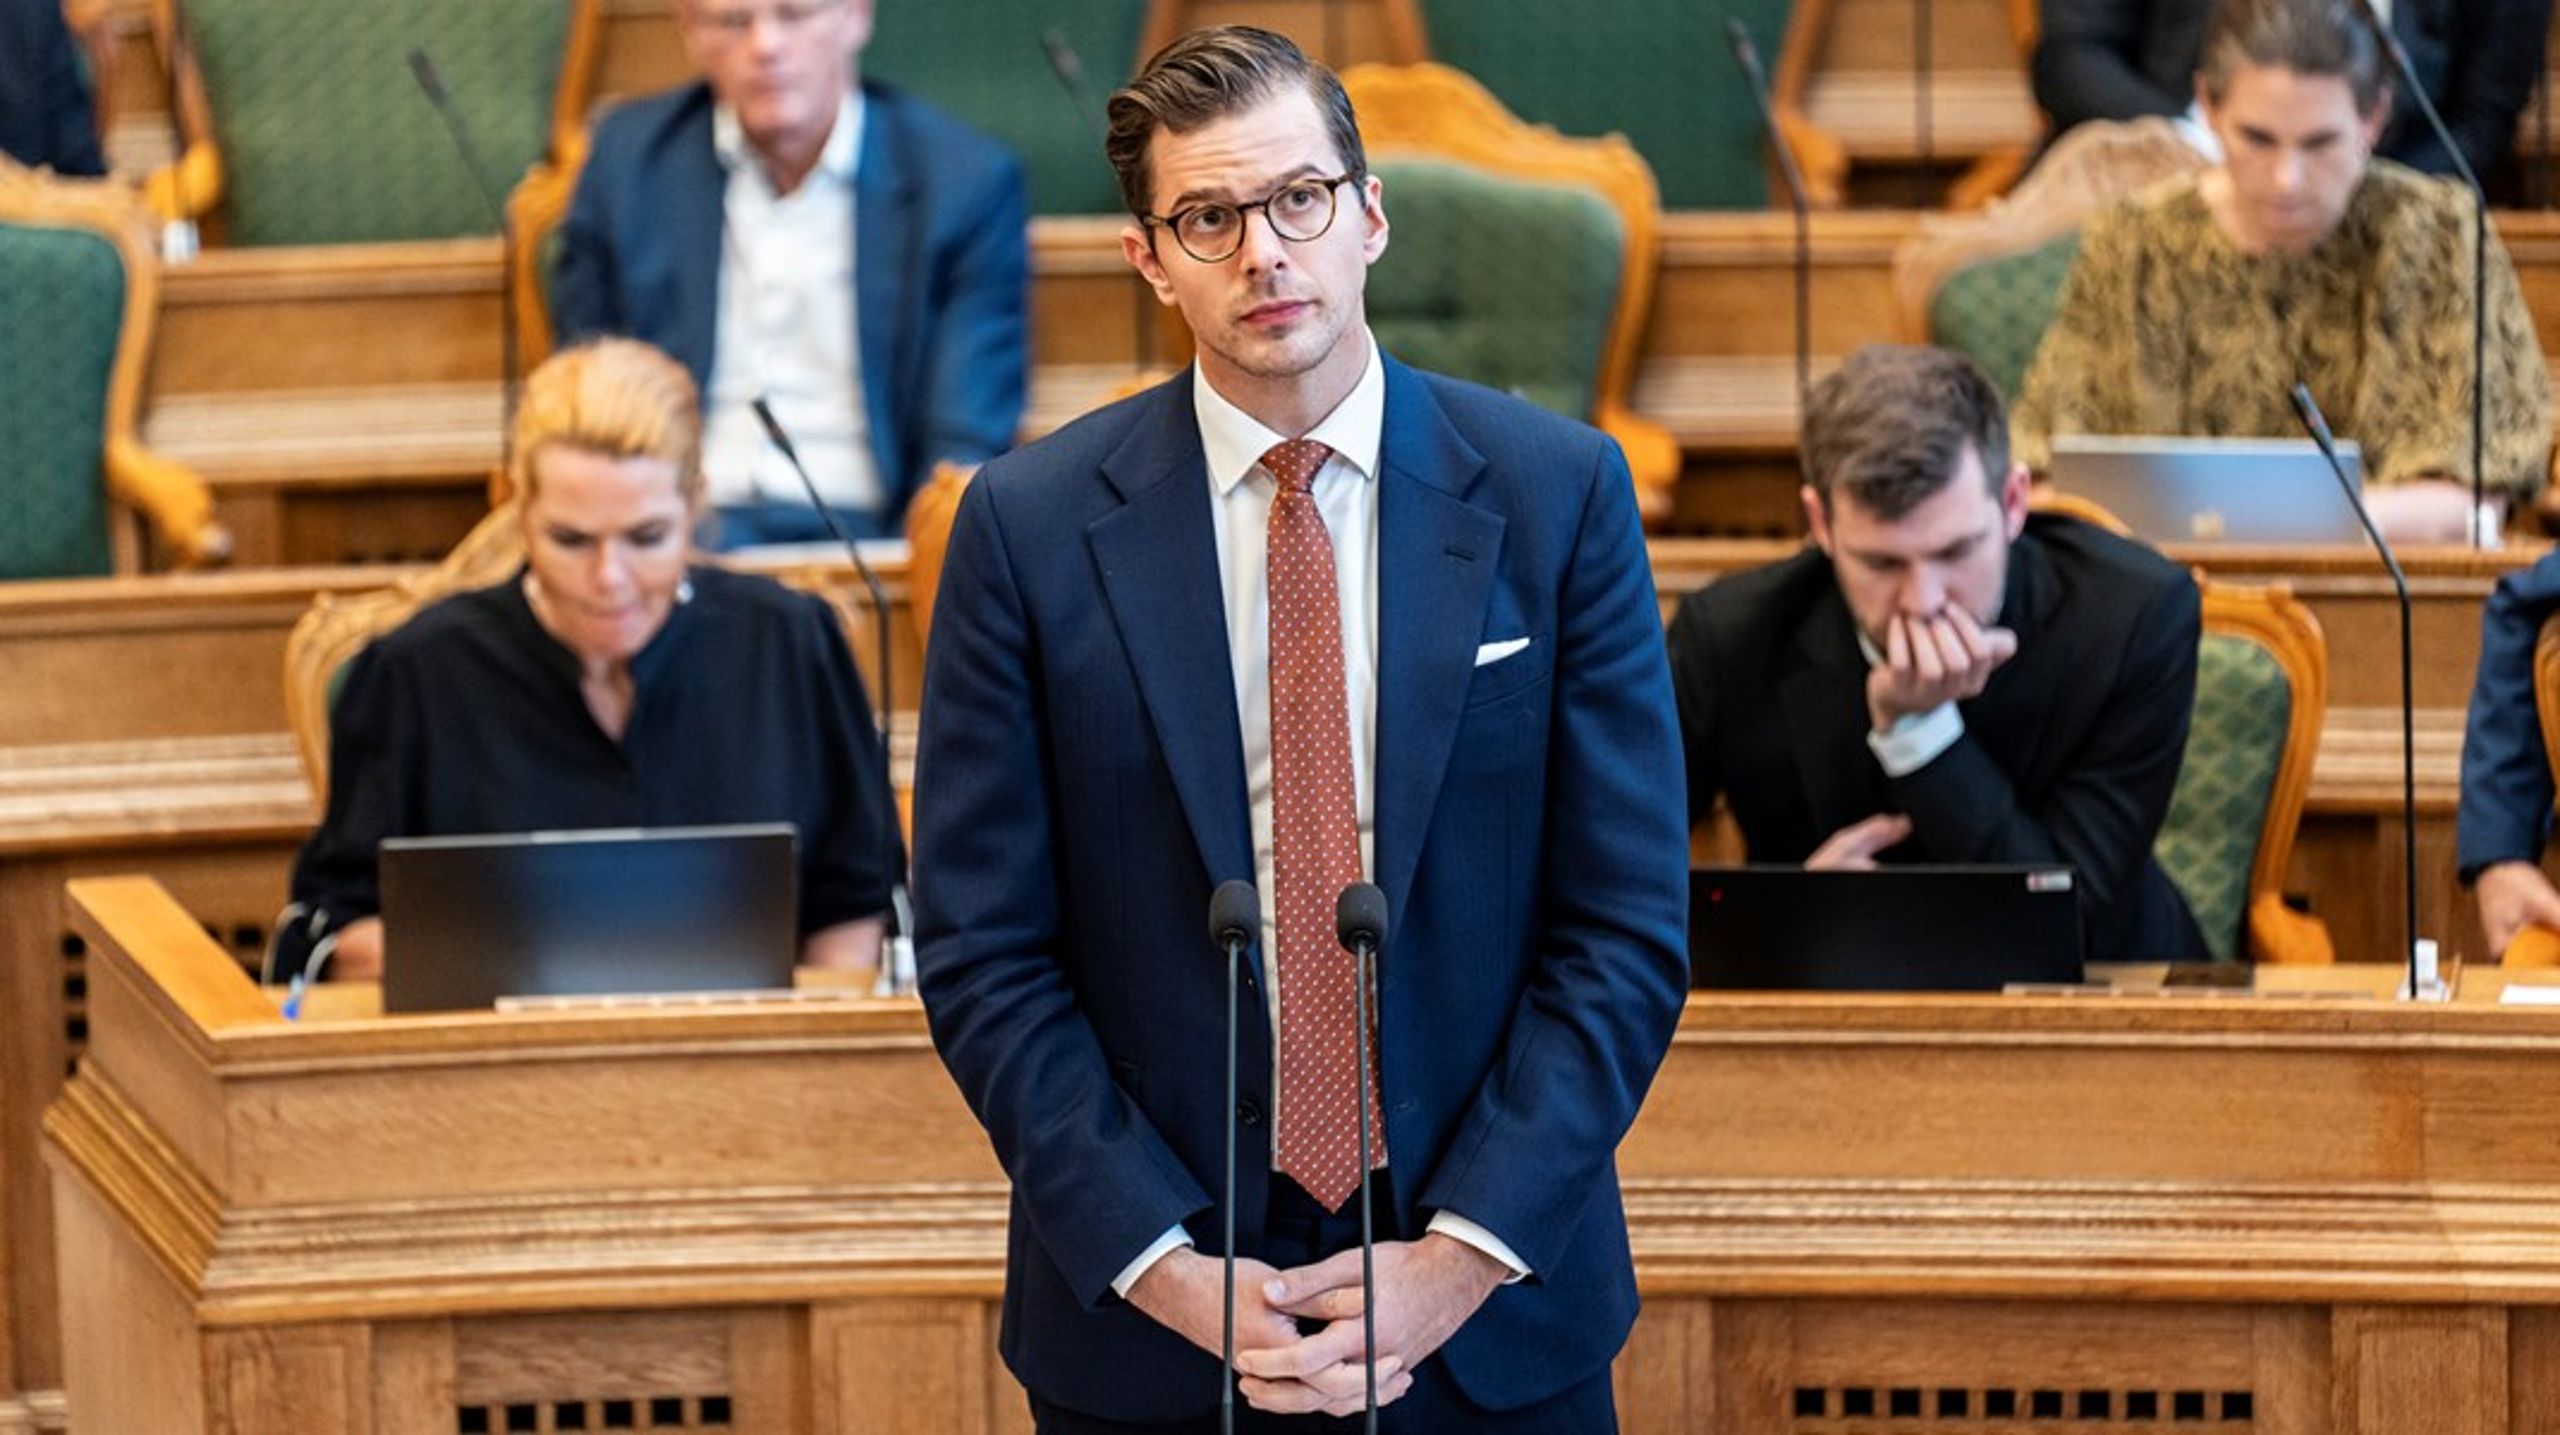 Formand for Liberal Alliance Alex Vanopslagh kan glæde sig over, at partiet lige nu står til at blive det tredjestørste i Folketinget.